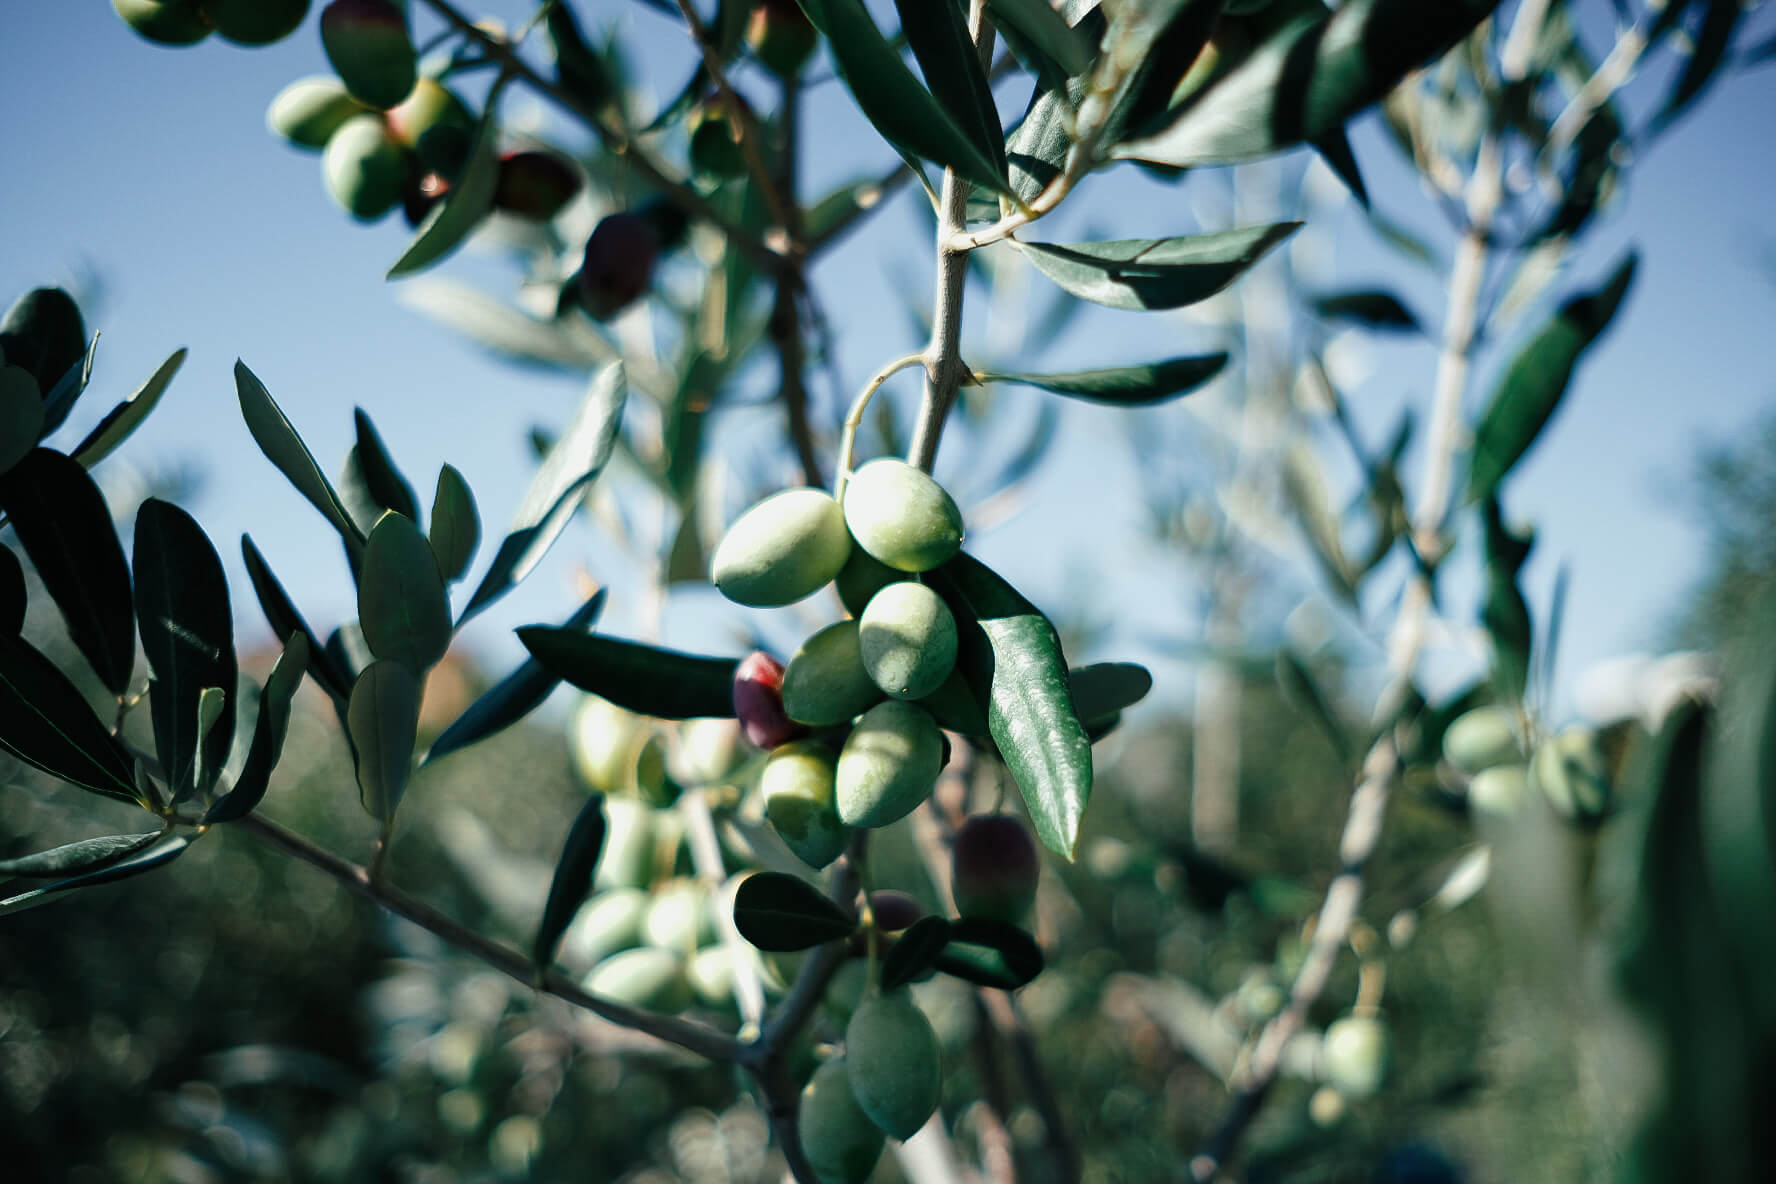 olive-picking-9.jpg